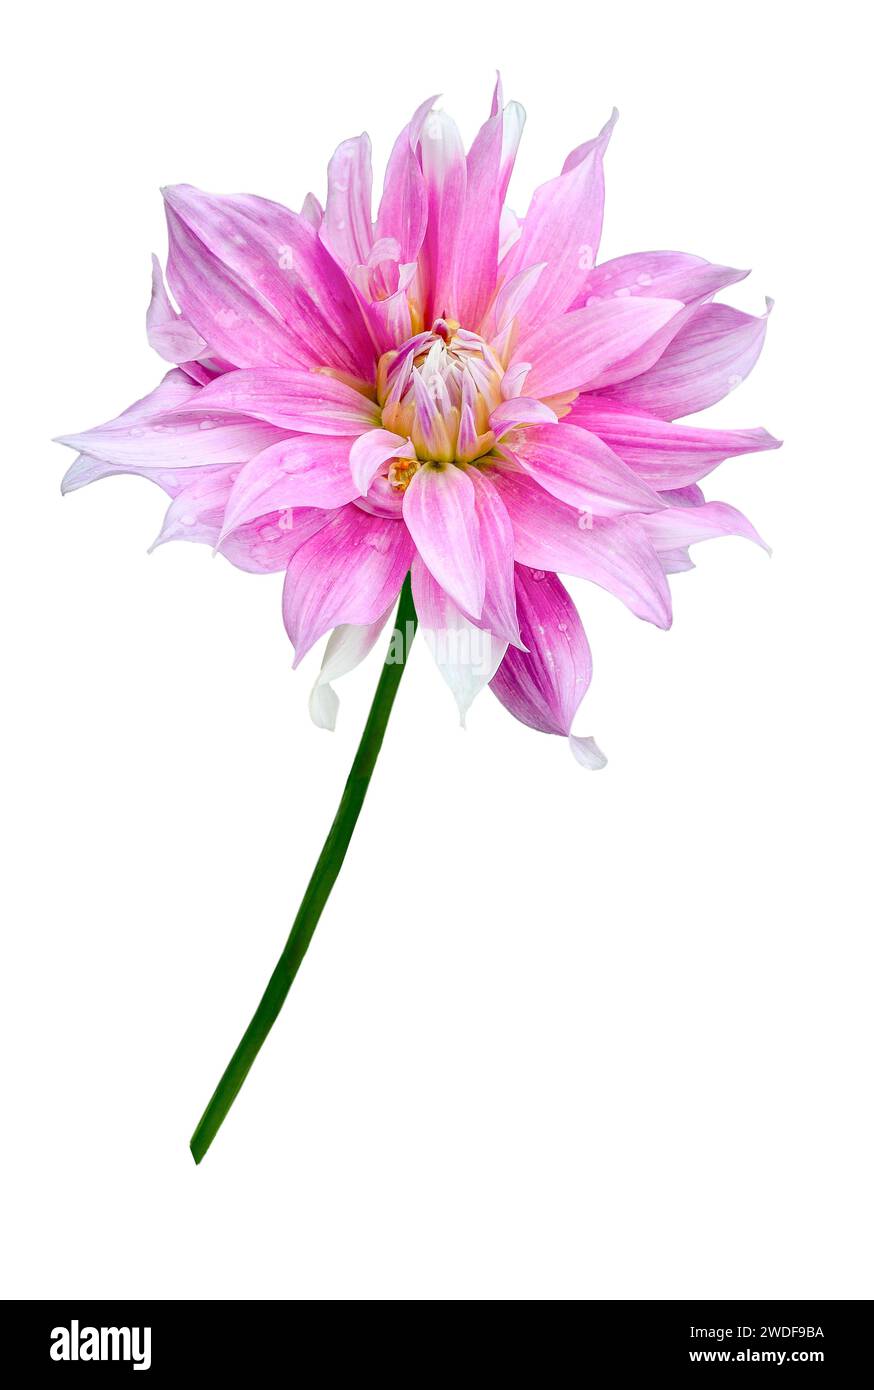 Fleur délicate de dahlia rose pâle isolée sur fond blanc en gros plan. Motif floral ou motif festif de carte de voeux. Beauté et perfection de na Banque D'Images